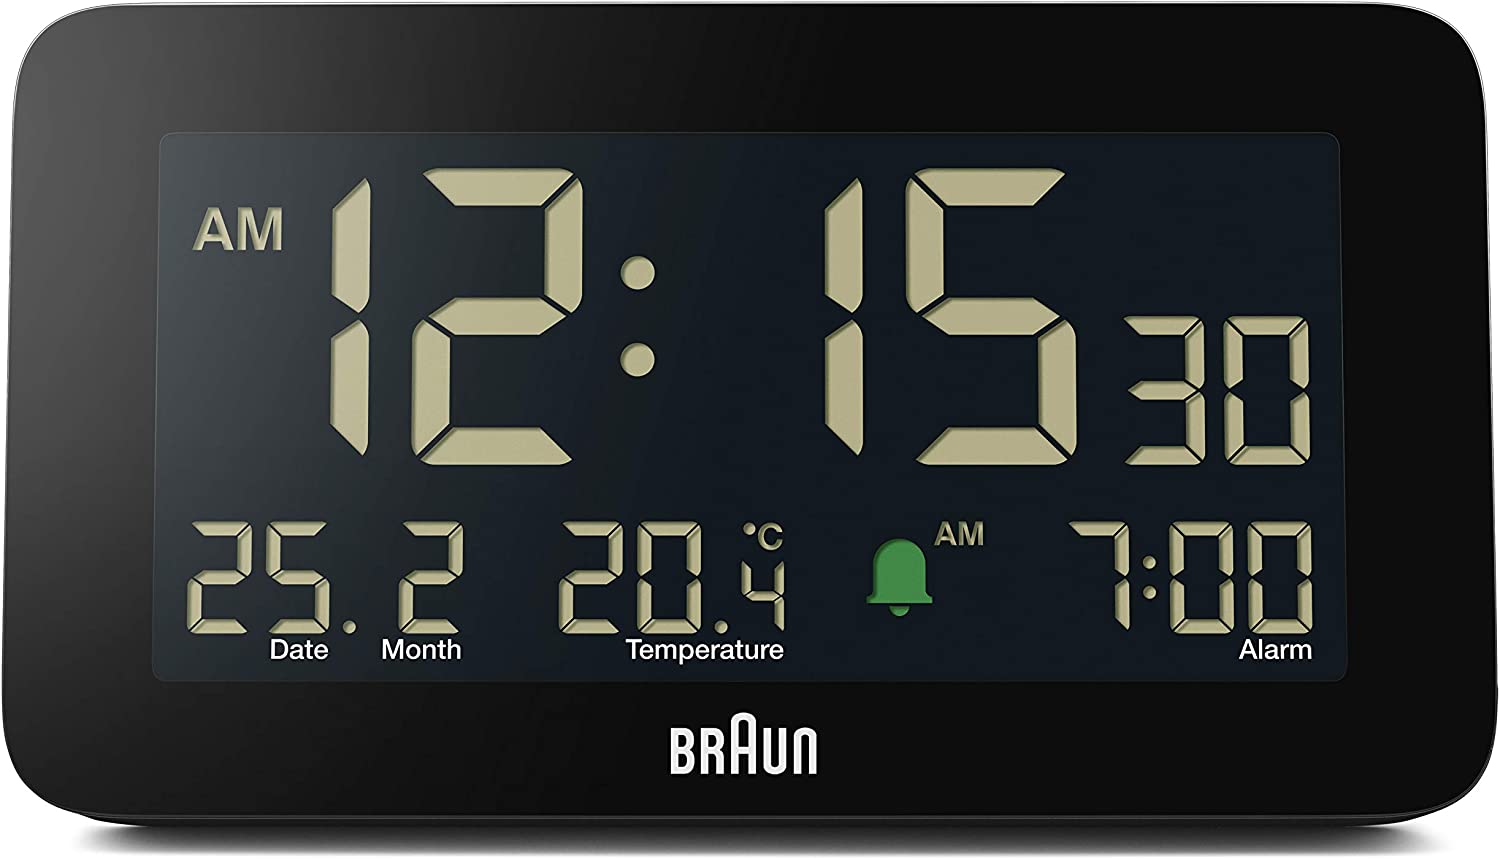 ساعت زنگ دار دیجیتال براون مدل Braun Digital Clock - ارسال 10 الی 15 روز کاری